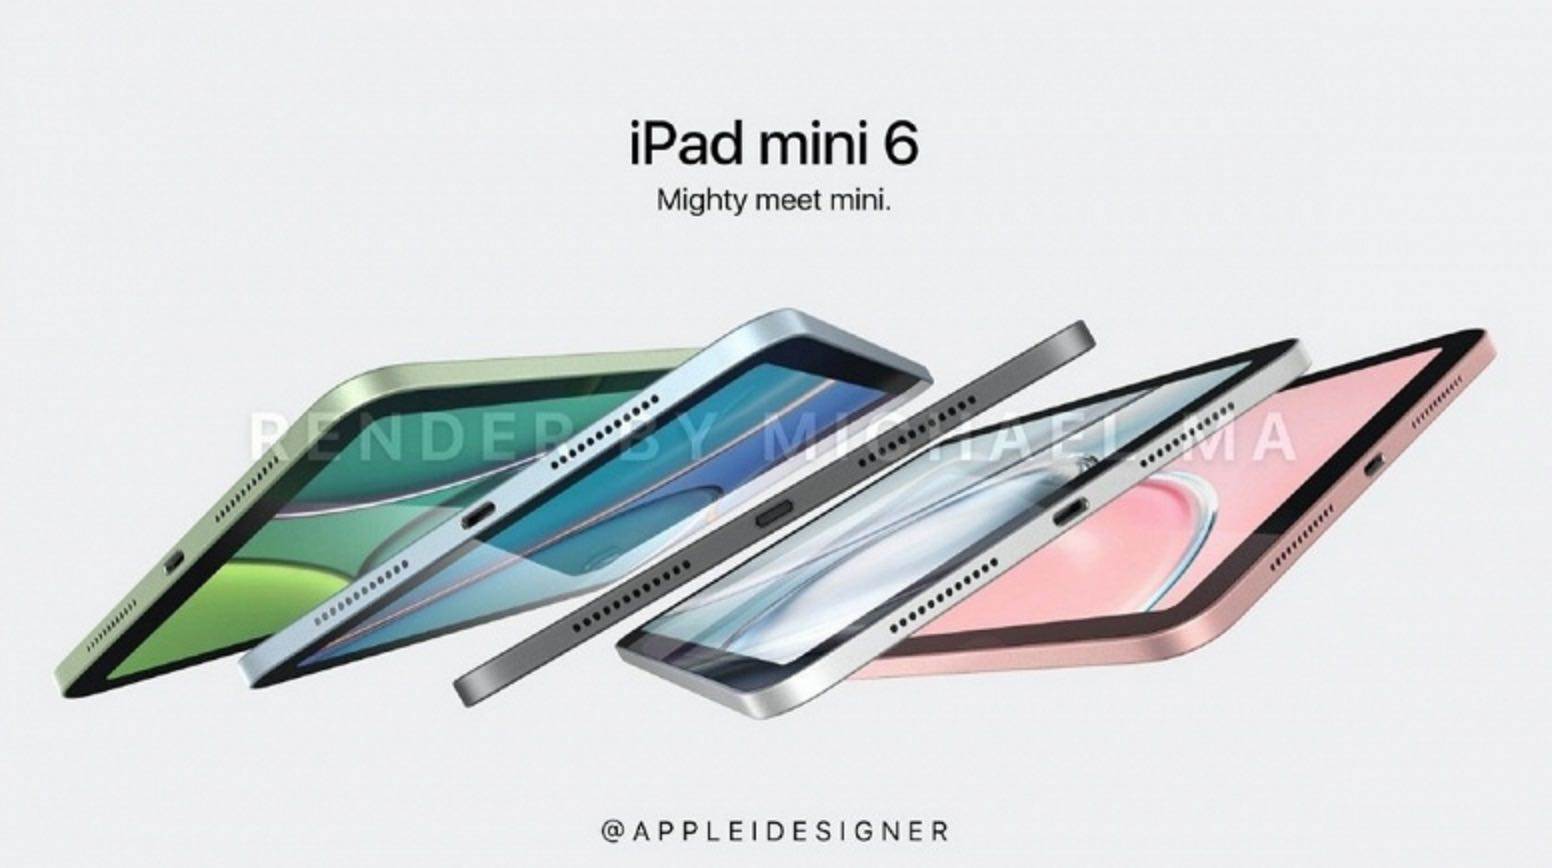 Apple iPad mini 6 (2021) na nowych renderach polecane, ciekawostki iPad mini 6.generacji, iPad mini 6, iPad mini 2021, Apple iPad mini 6  Prezentacja iPad mini 6 zbliża się wielkimi krokami. Nowe urządzenie zostanie zaprezentowane najprawdopodobniej 23 marca 2021 roku podczas specjalnej wirtualnej konferencji Apple. iPadmini6 3 1